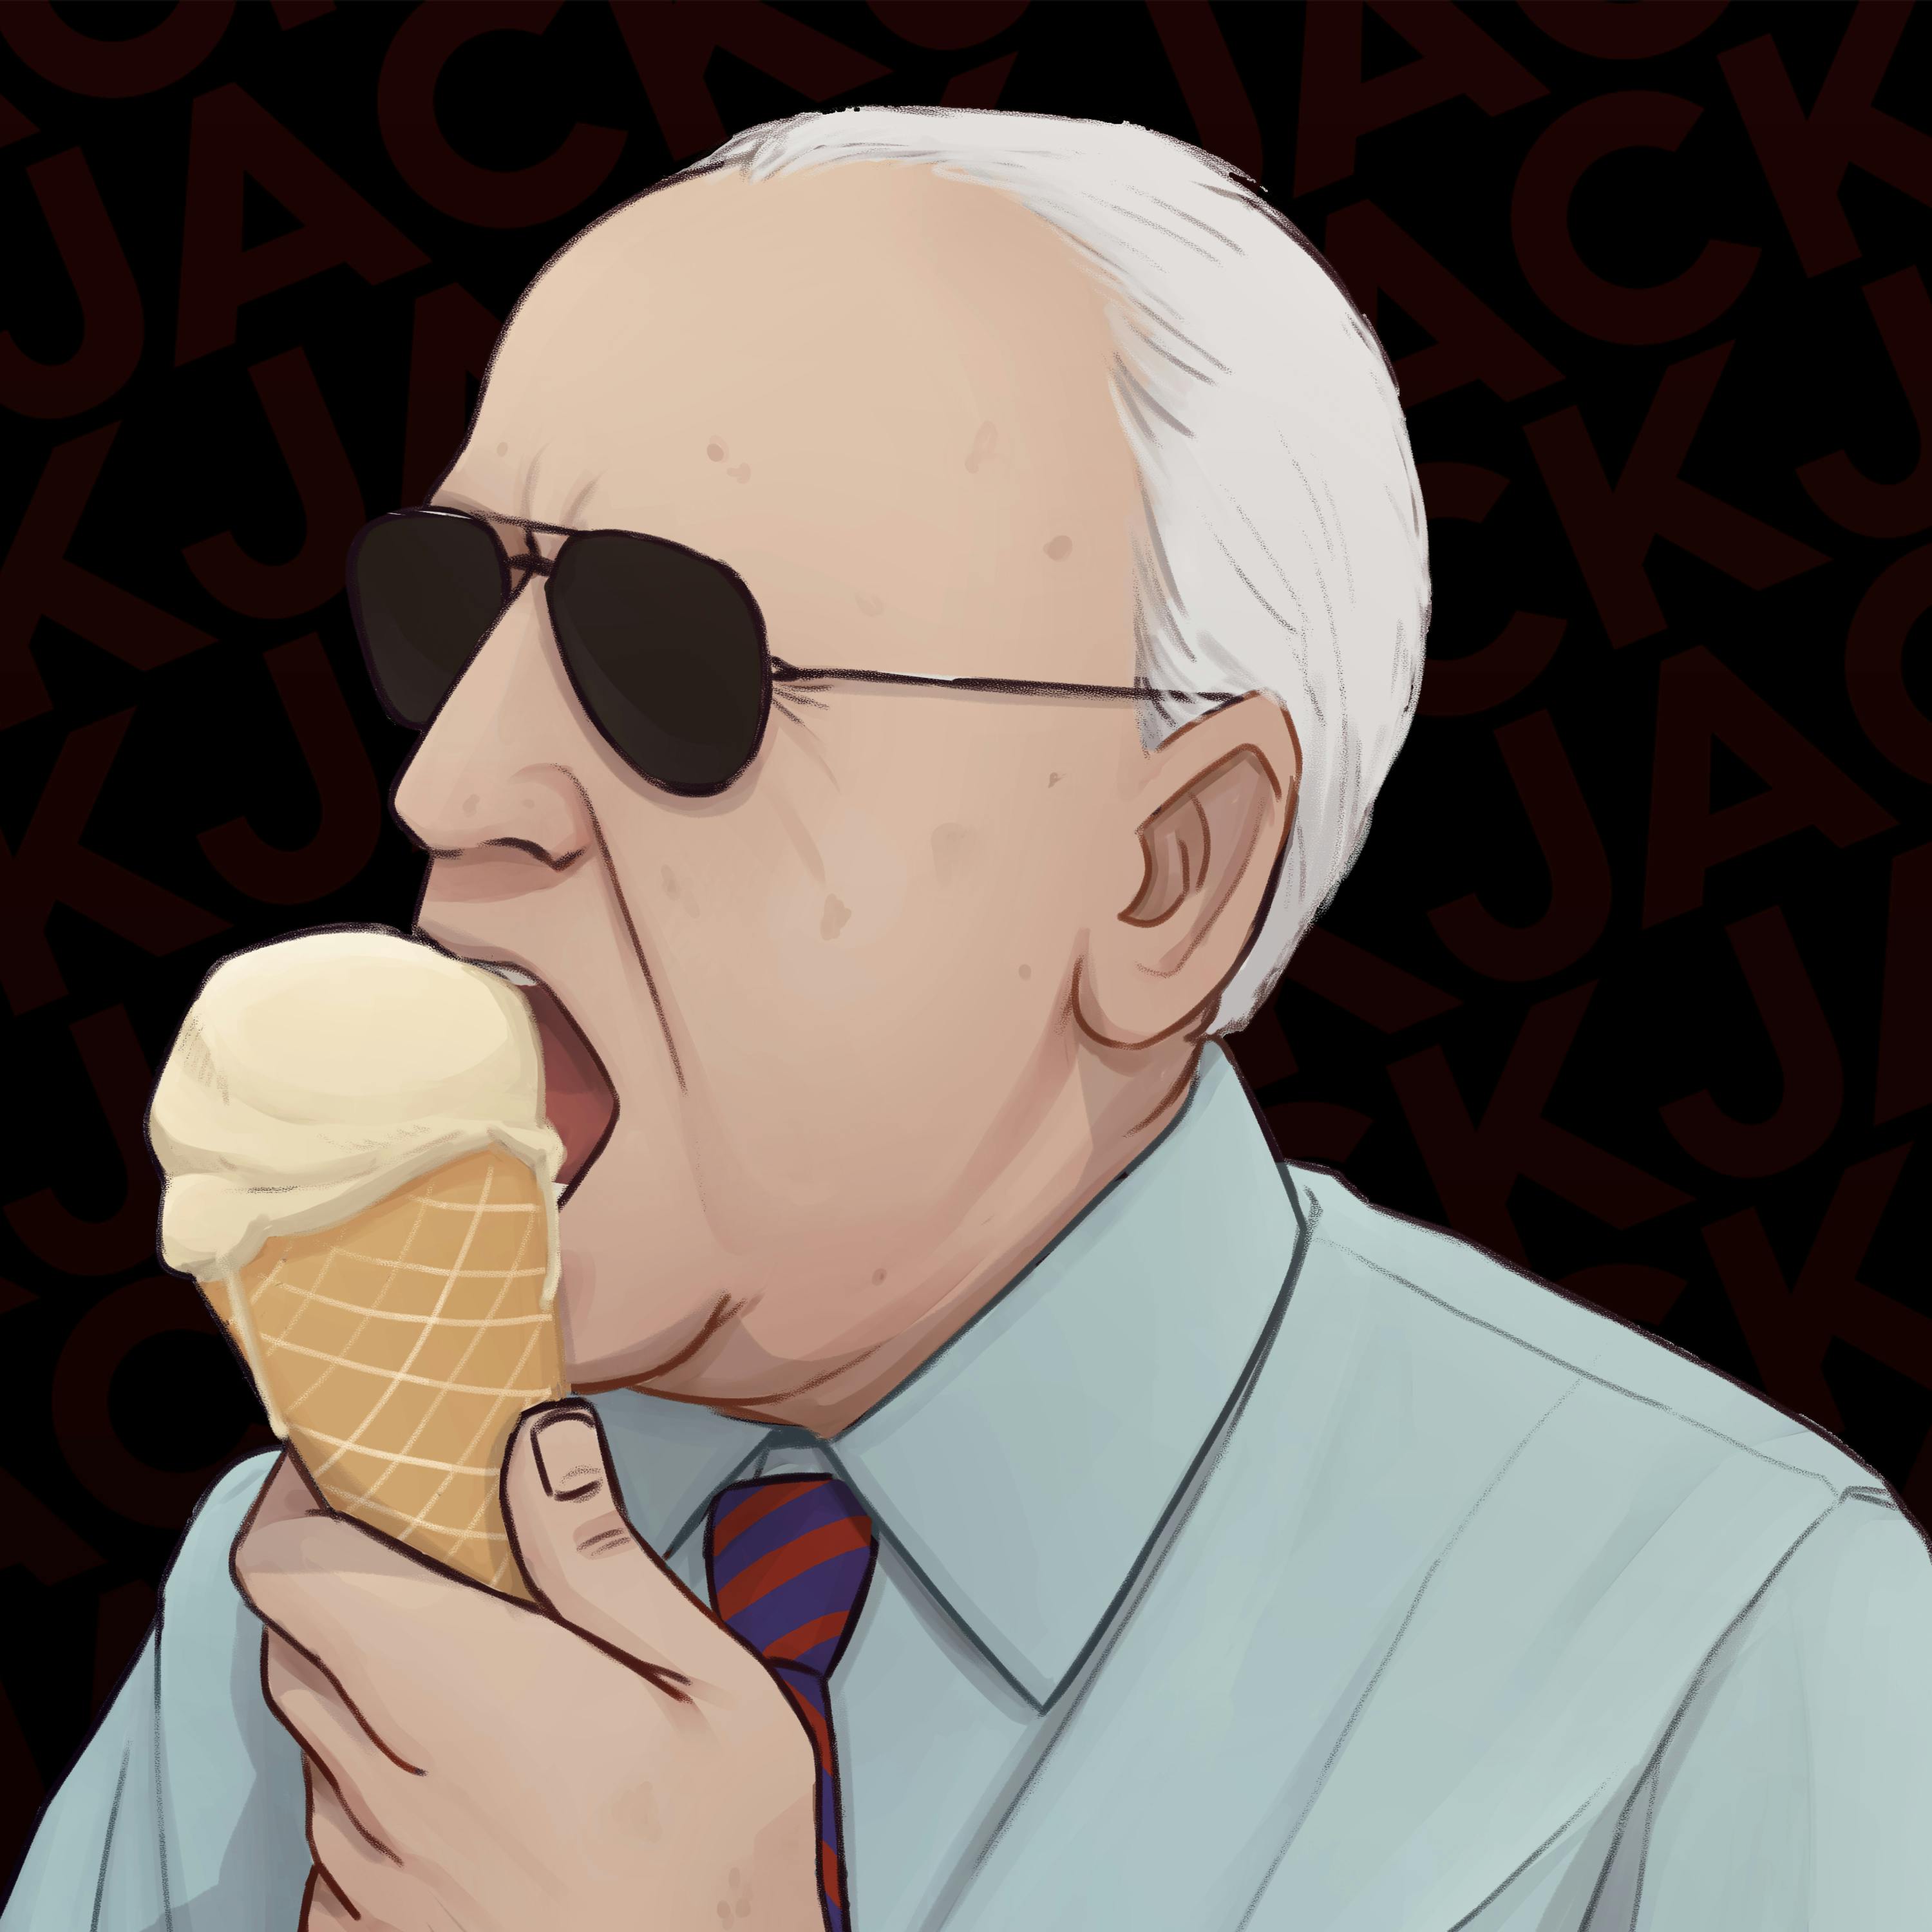 330: The Ice Cream President